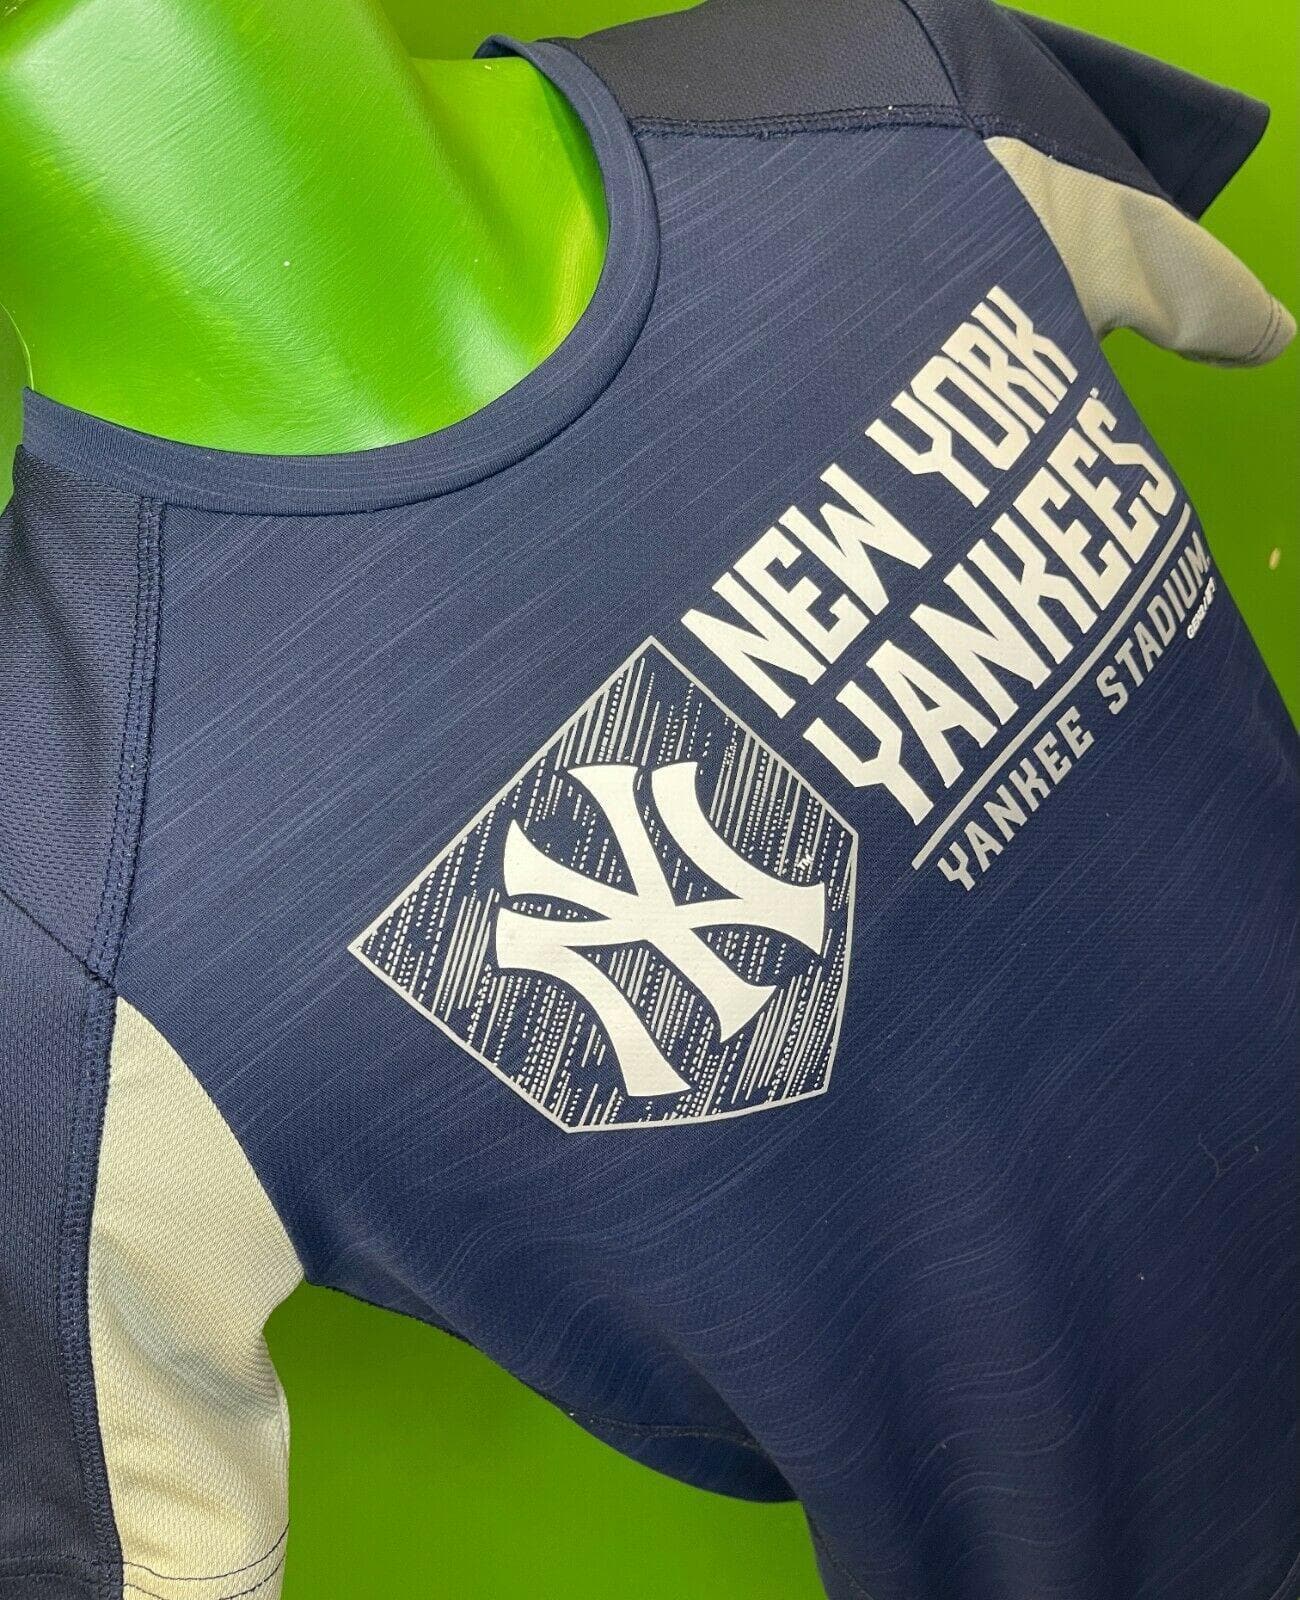 MLB New York Yankees Wicking T-Shirt Youth Medium 10-12